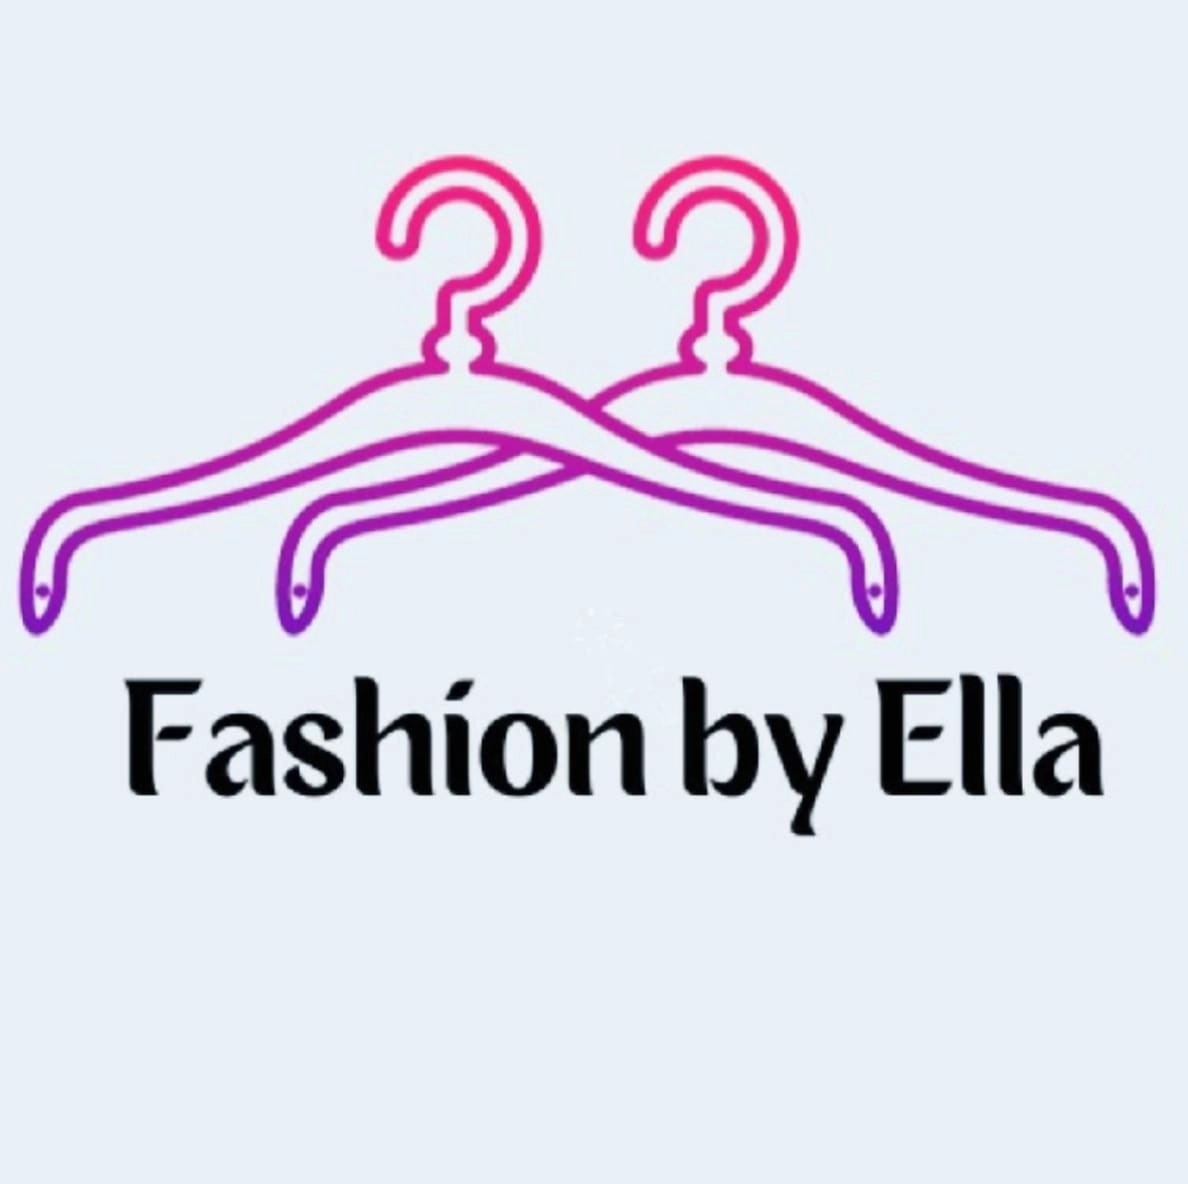 Fashion By Ellas achtergrond